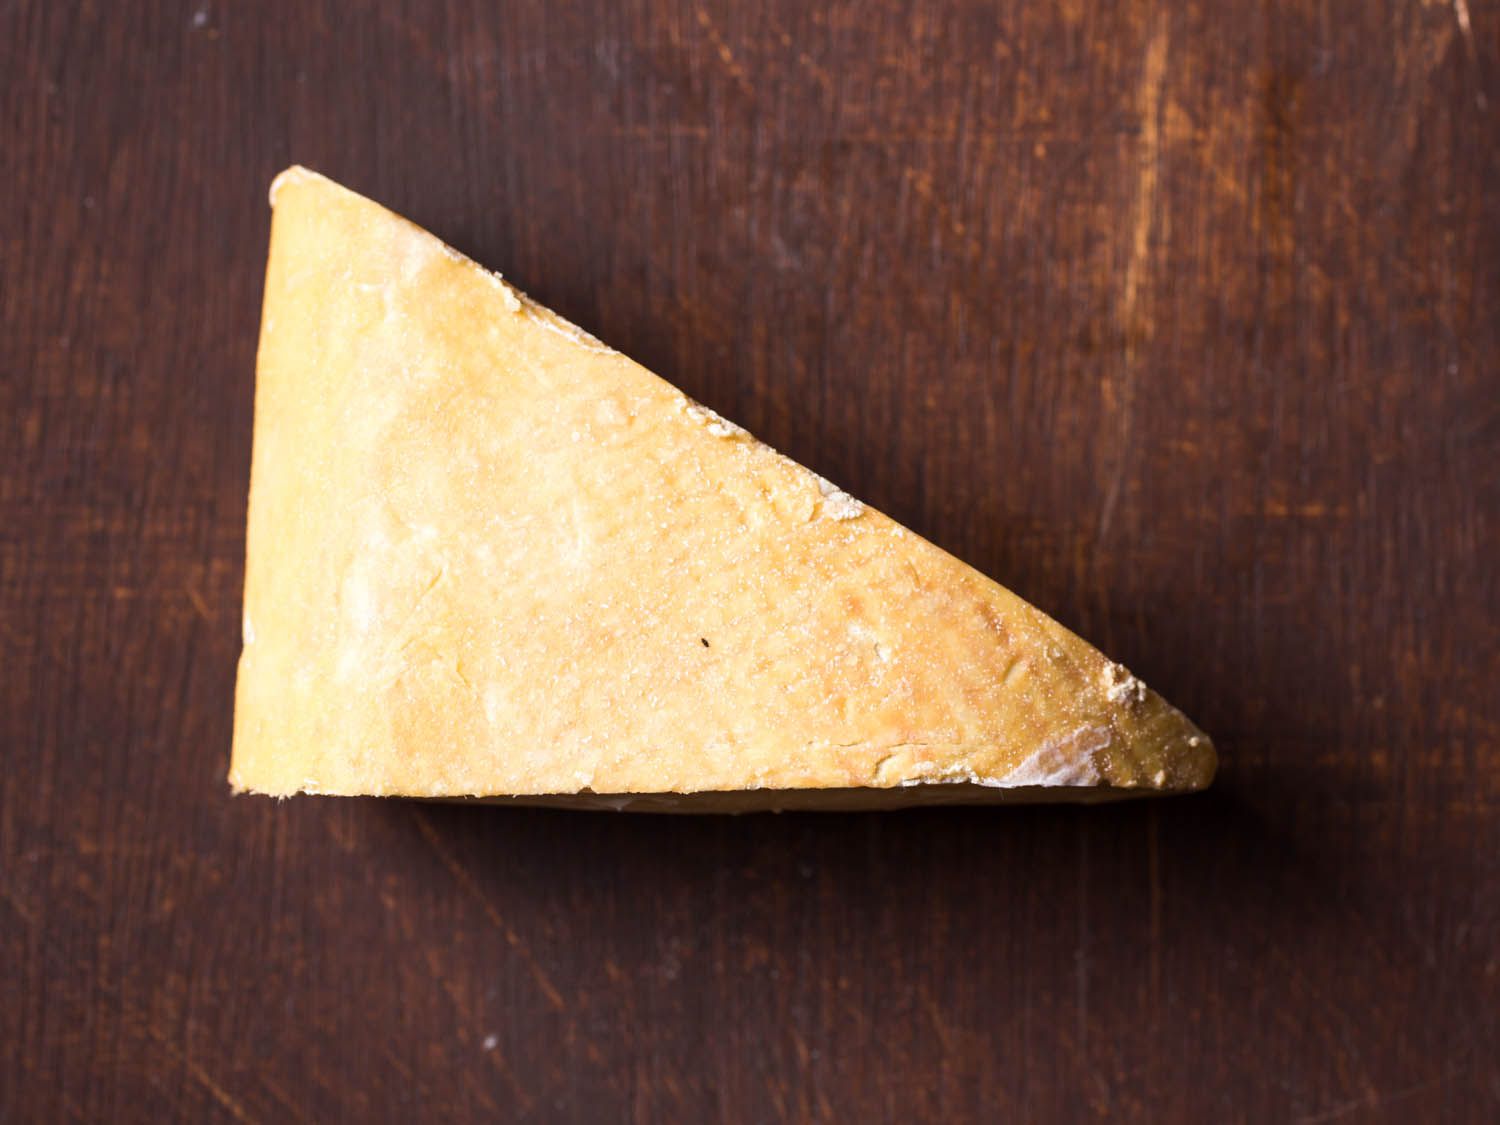 20141021 - cheese101 -南-奶酪-草原溪-格雷森-维姬-沃斯克- 8. - jpg